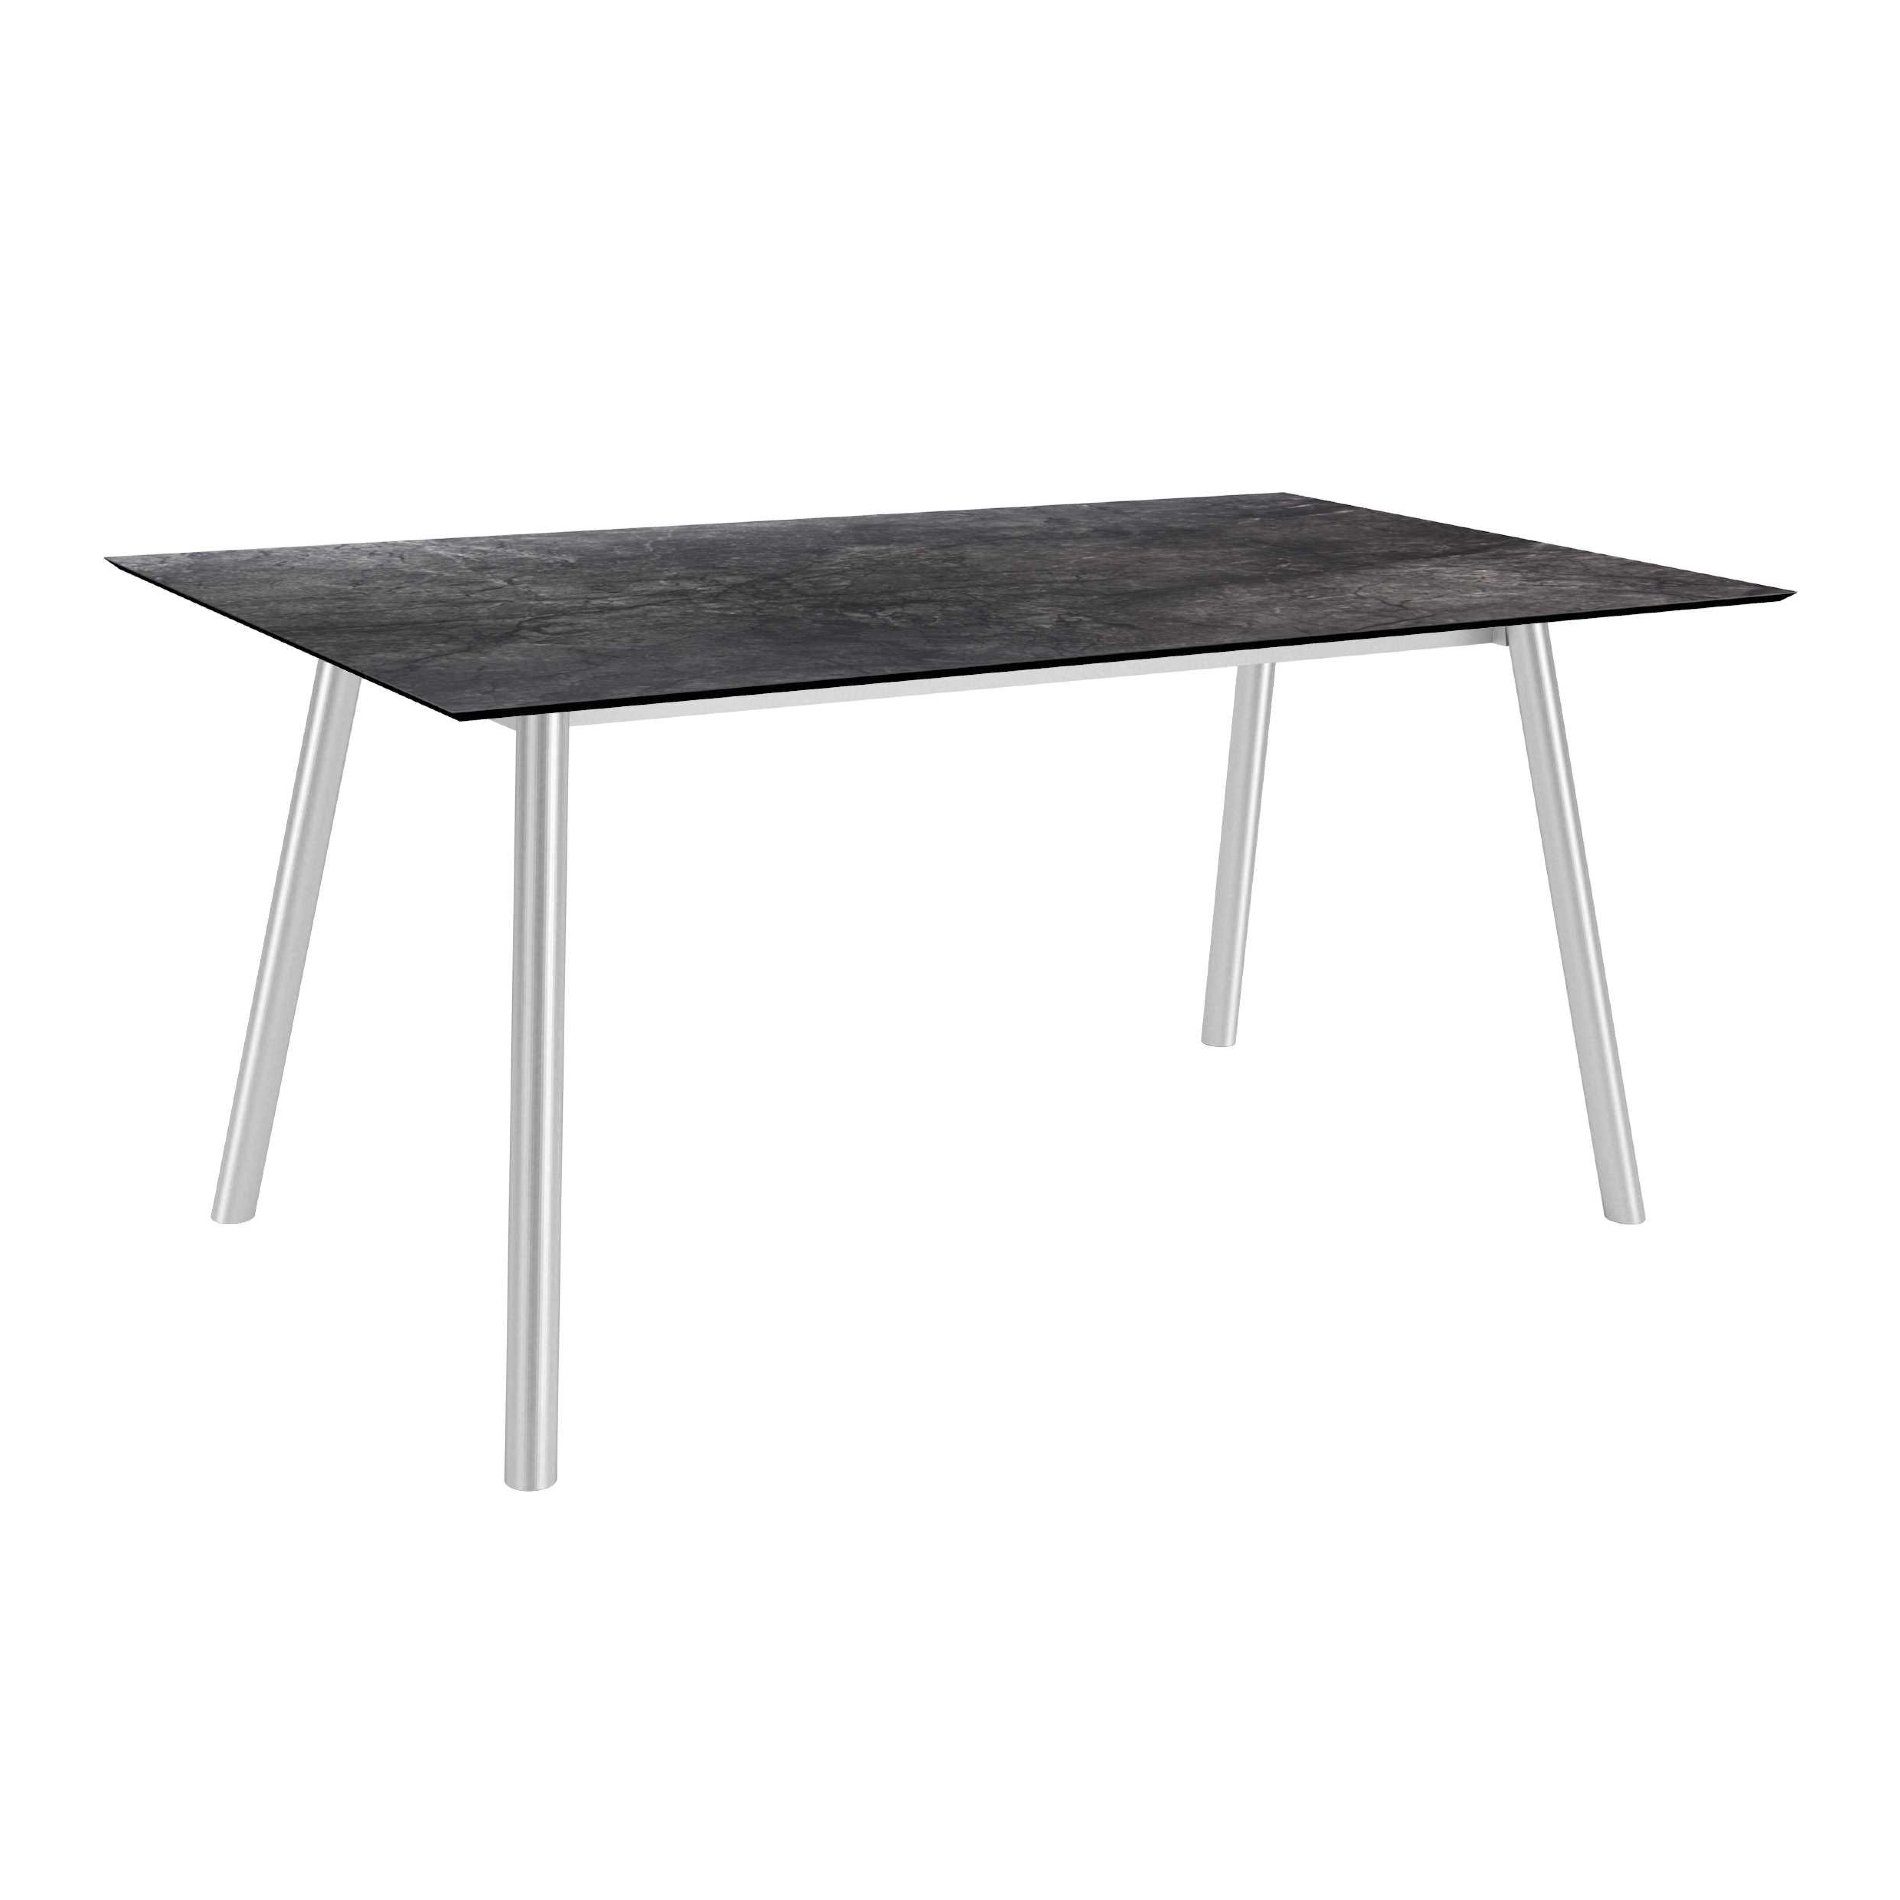 Stern Tisch "Interno", Größe 180x100cm, Edelstahl, Rundrohr, Tischplatte HPL Dark Marble